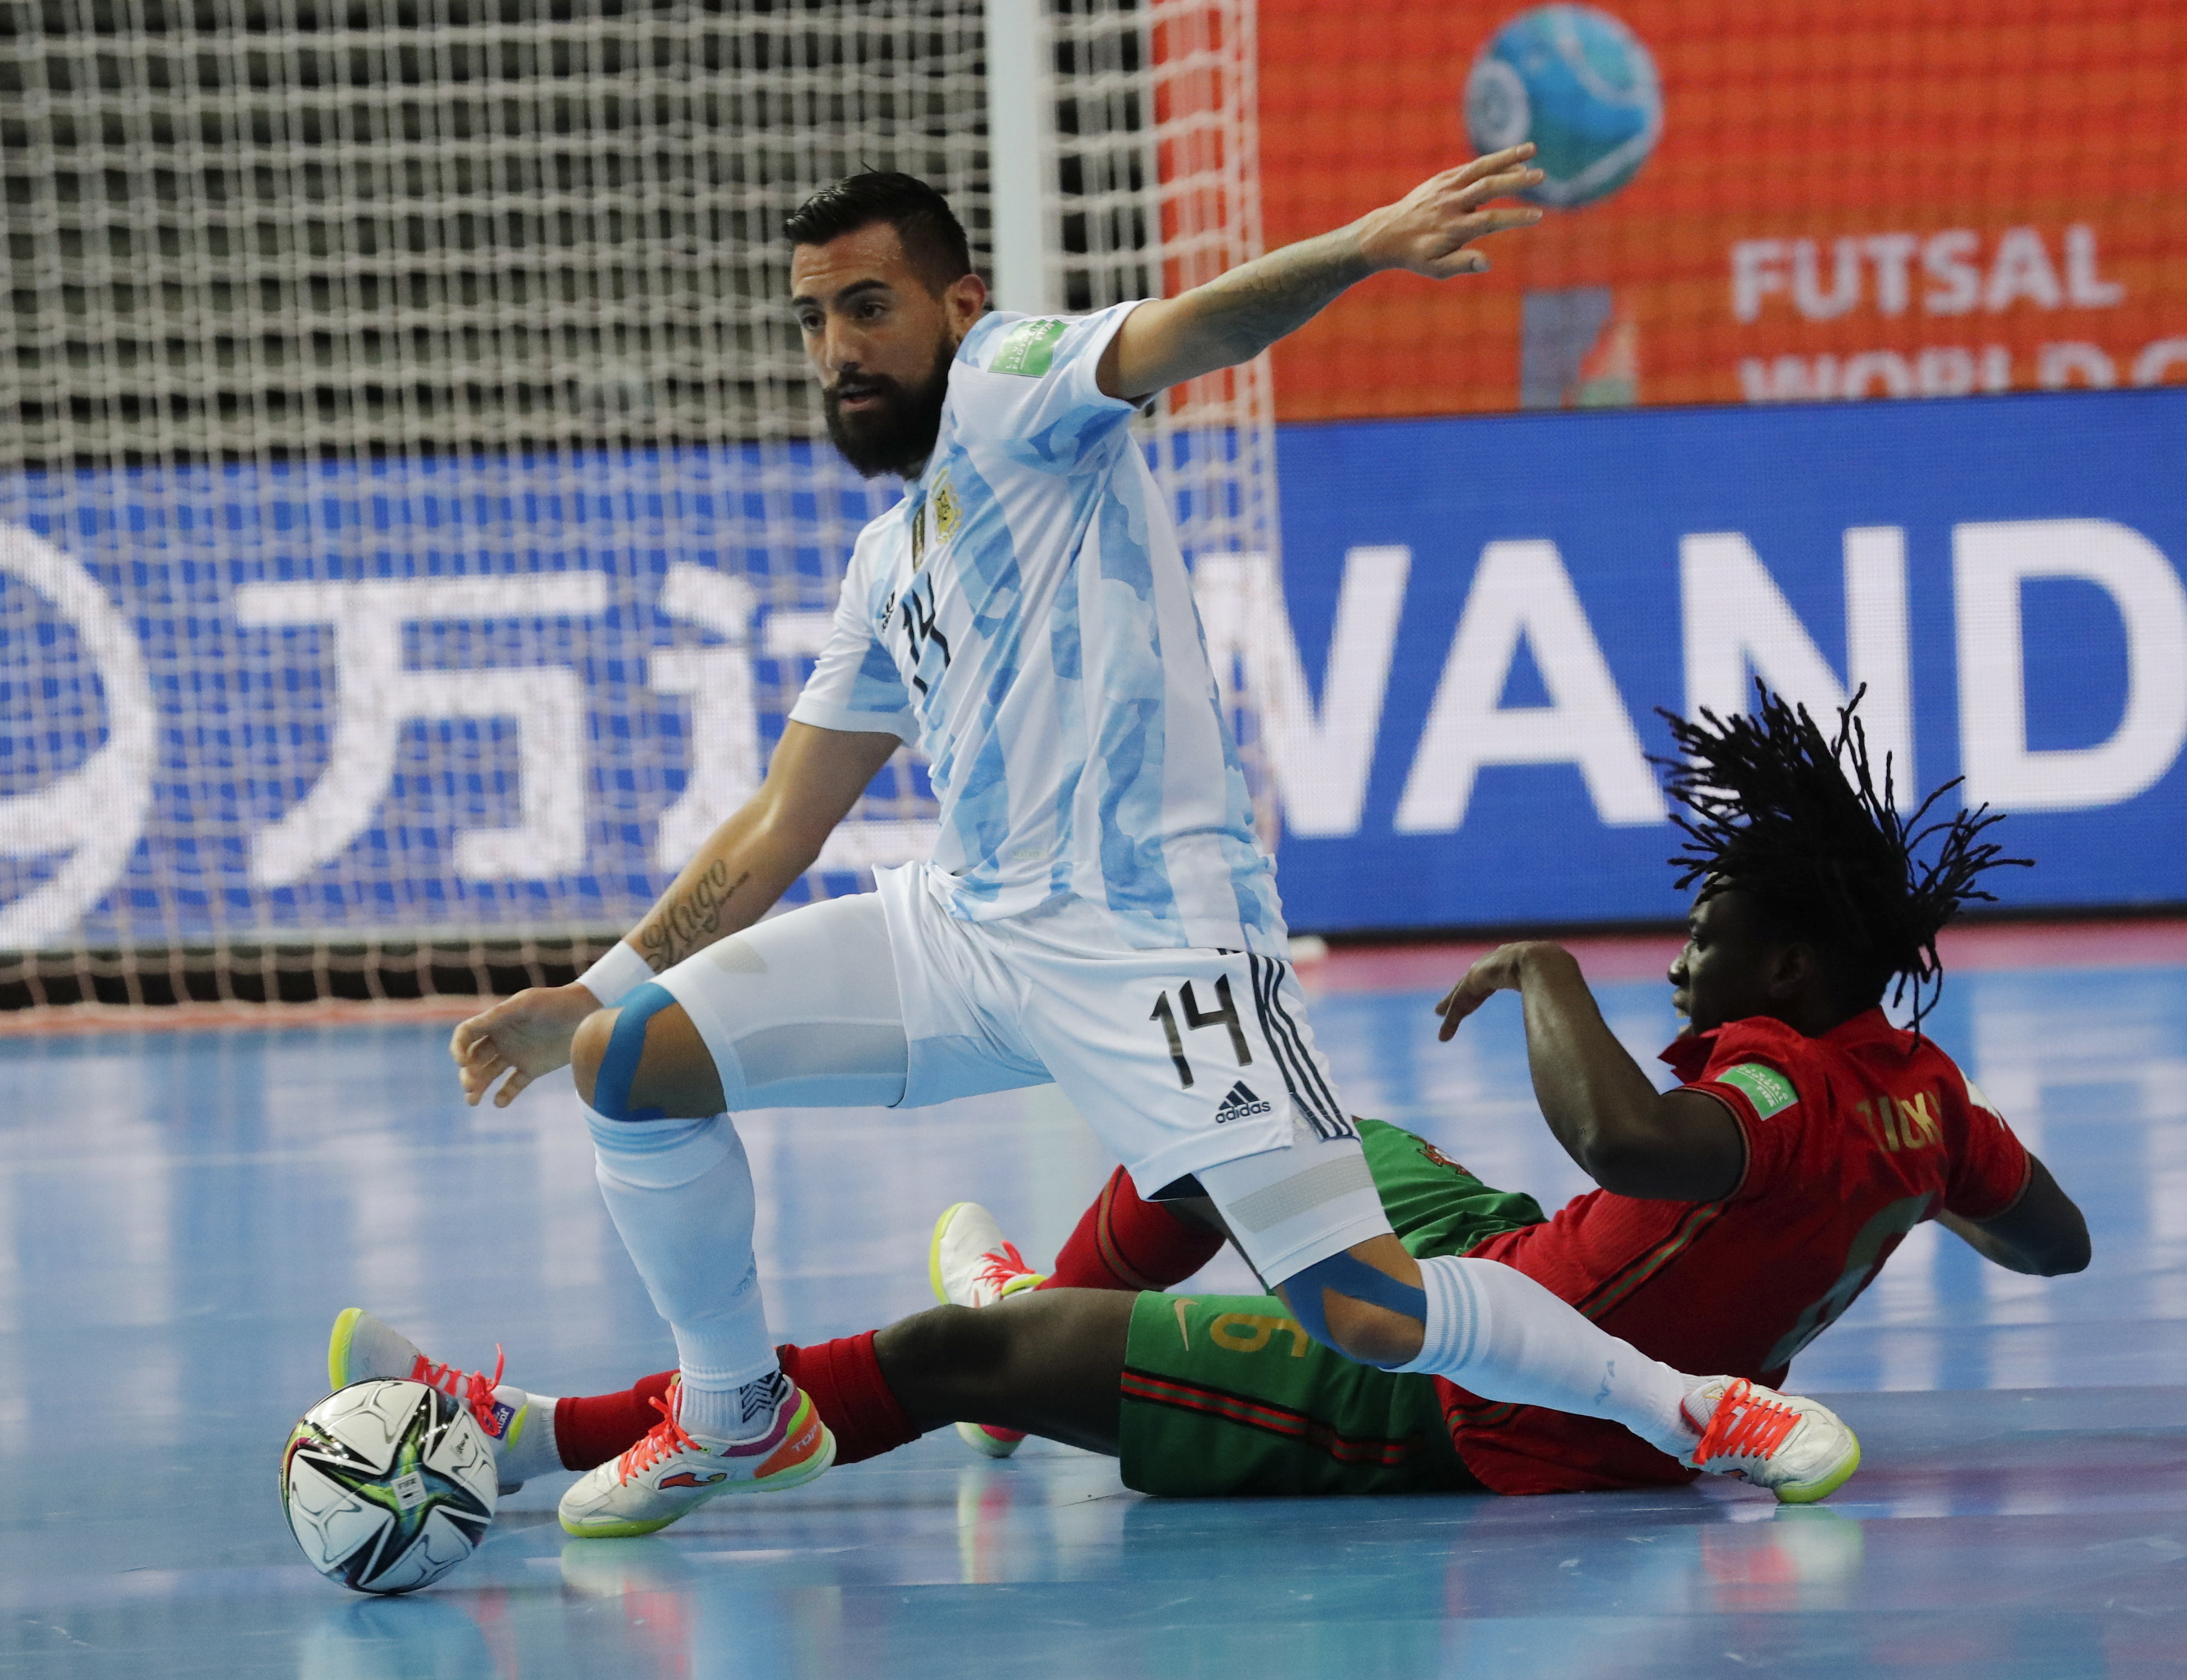 Portugal vence Argentina na final da Copa do Mundo de futsal - 03/10/2021 -  Esporte - Folha